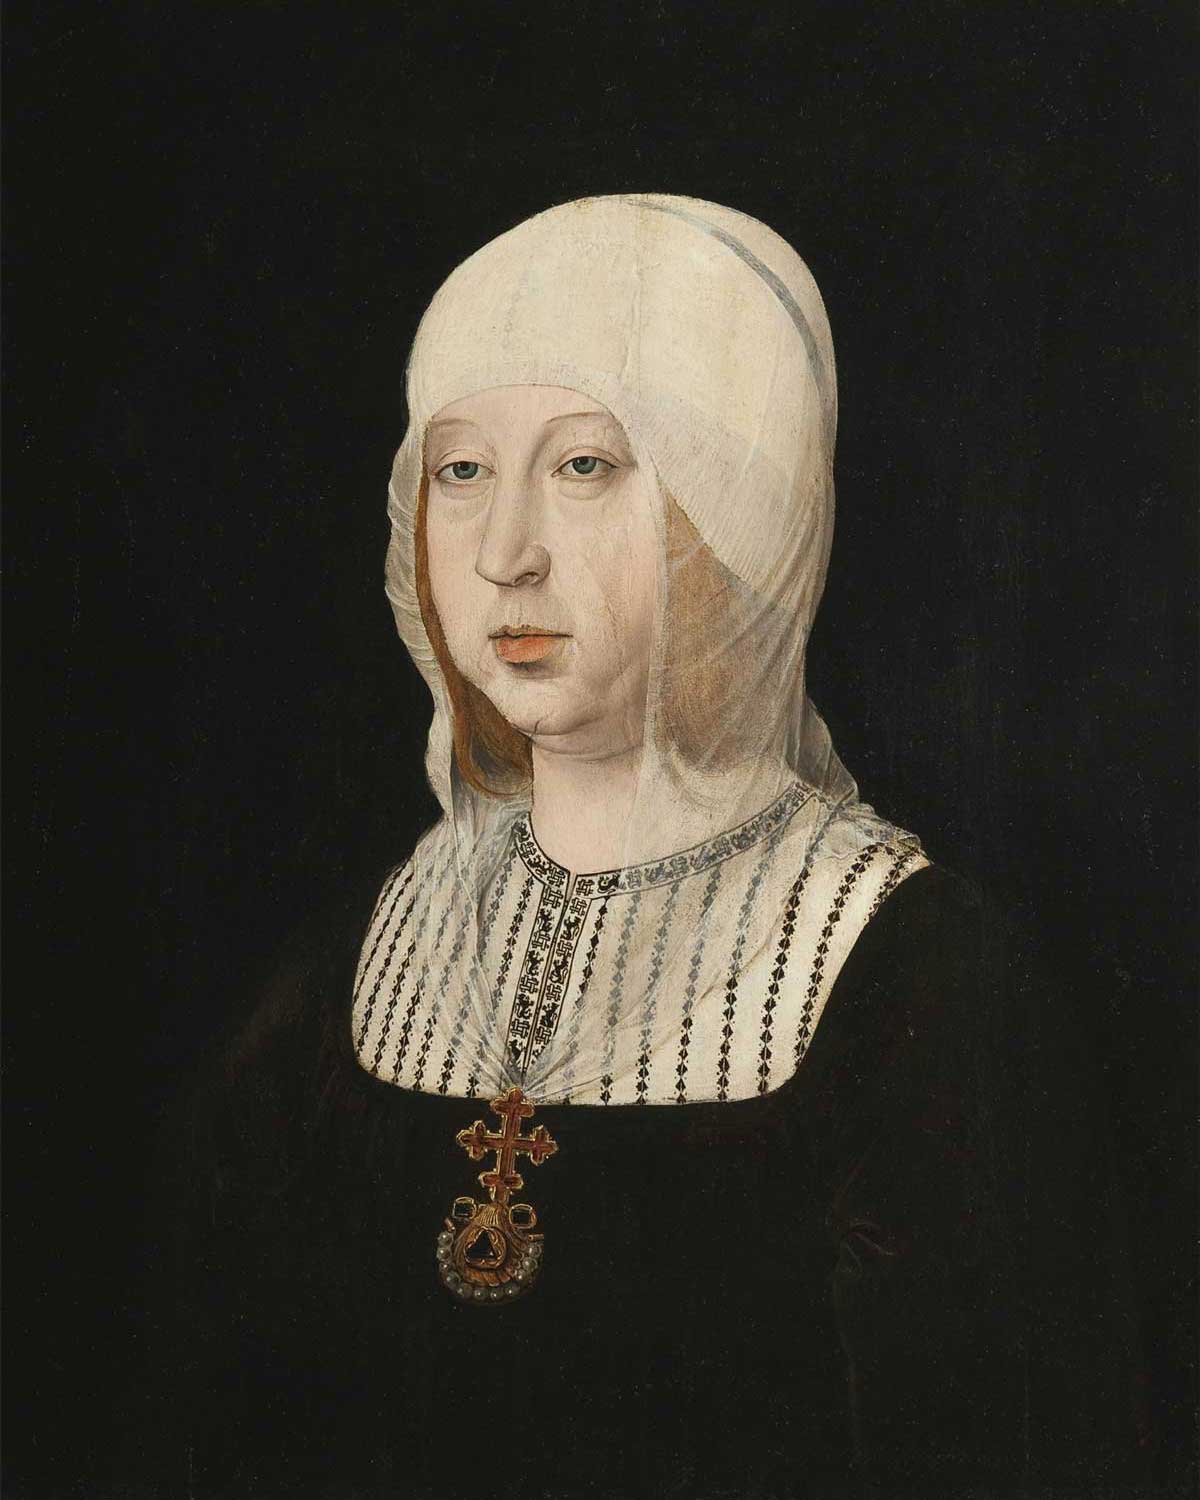 Isabel la Católica, por Juan de Flandes, h. 1500-1504, Palacio Real de Madrid.